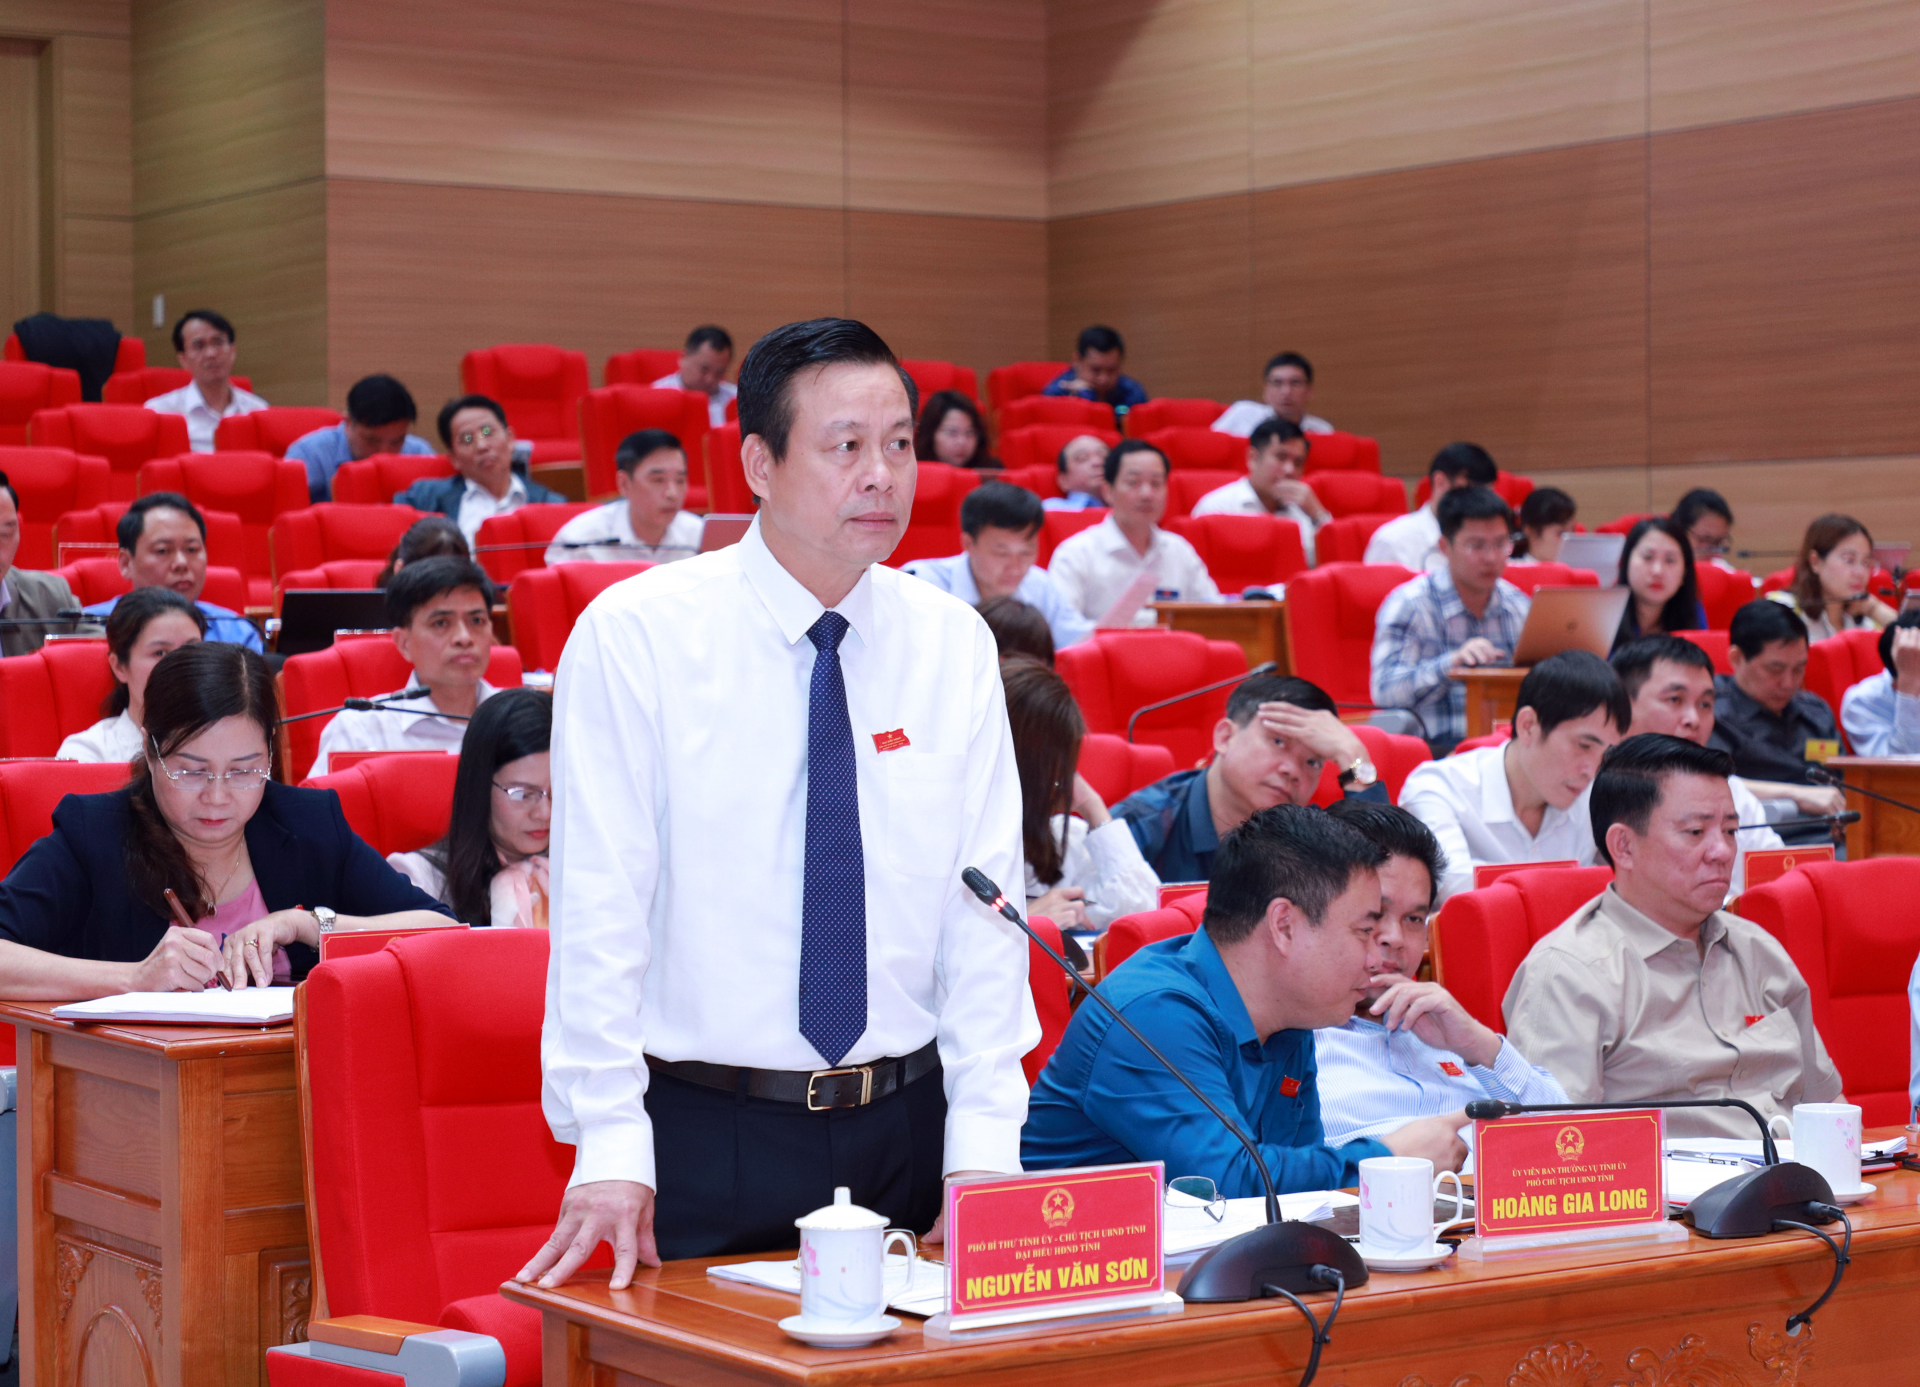 Phó Bí thư Tỉnh ủy, Chủ tịch UBND tỉnh Nguyễn Văn Sơn giải trình các nội dung của đại biểu thảo luận tại kỳ họp.